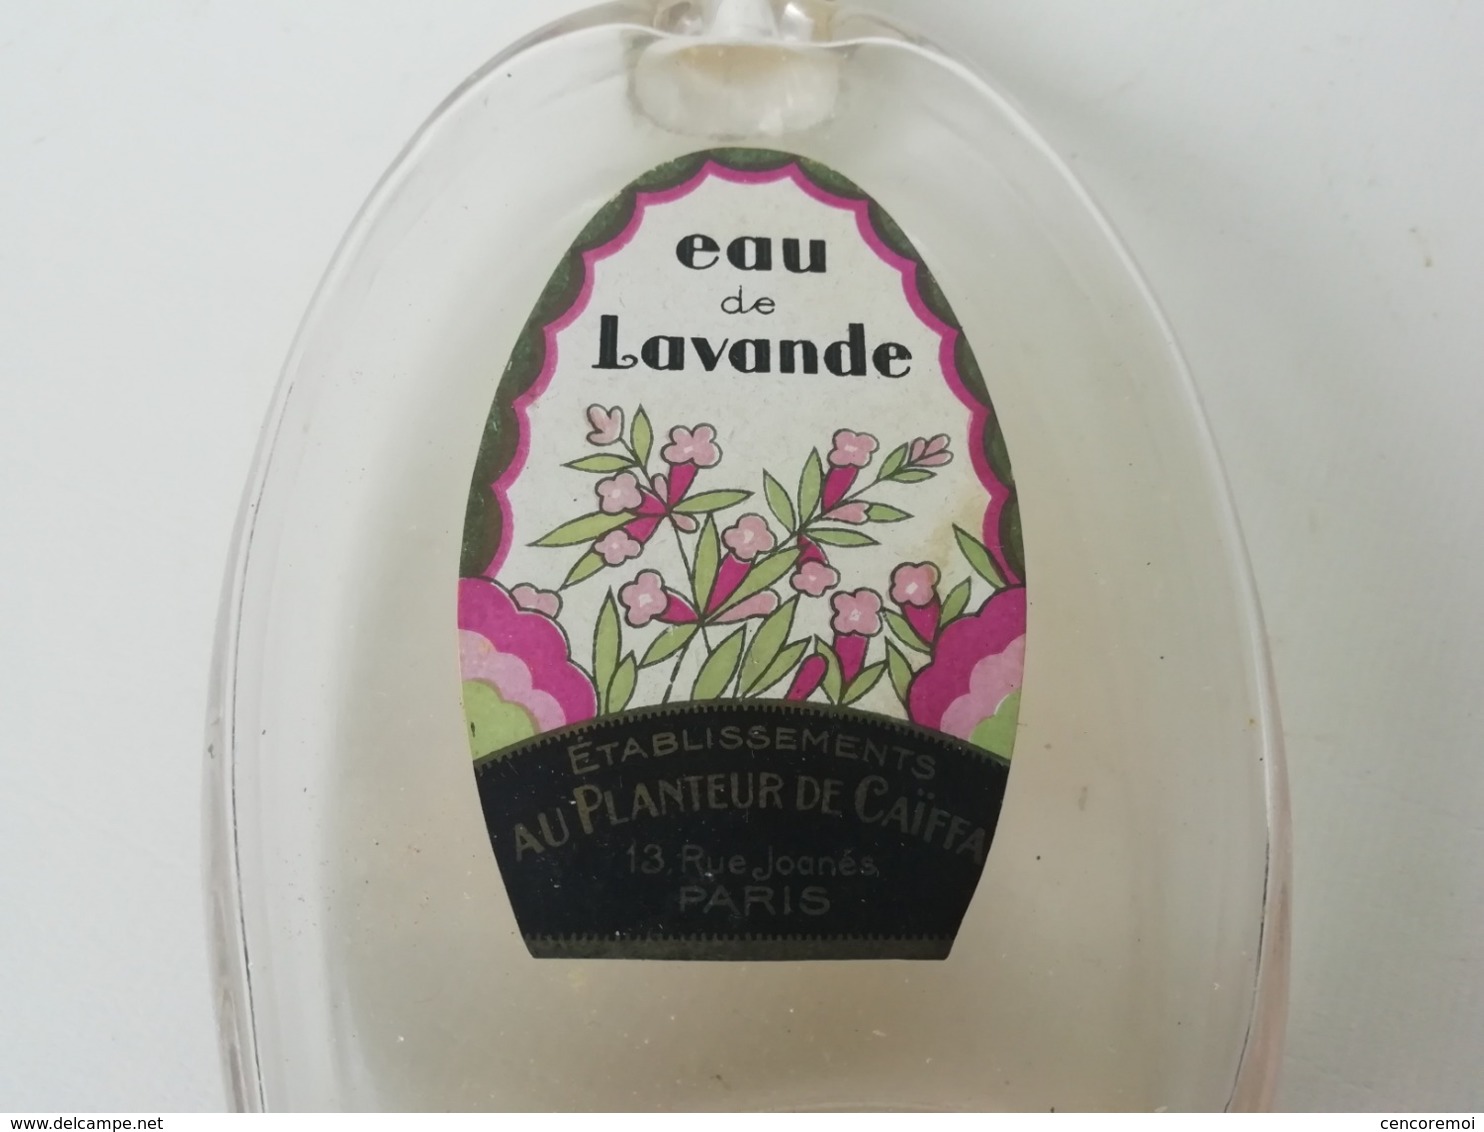 flacon à parfum ancien en verre soufflé eau de lavande au planteur de Caïffa, Paris